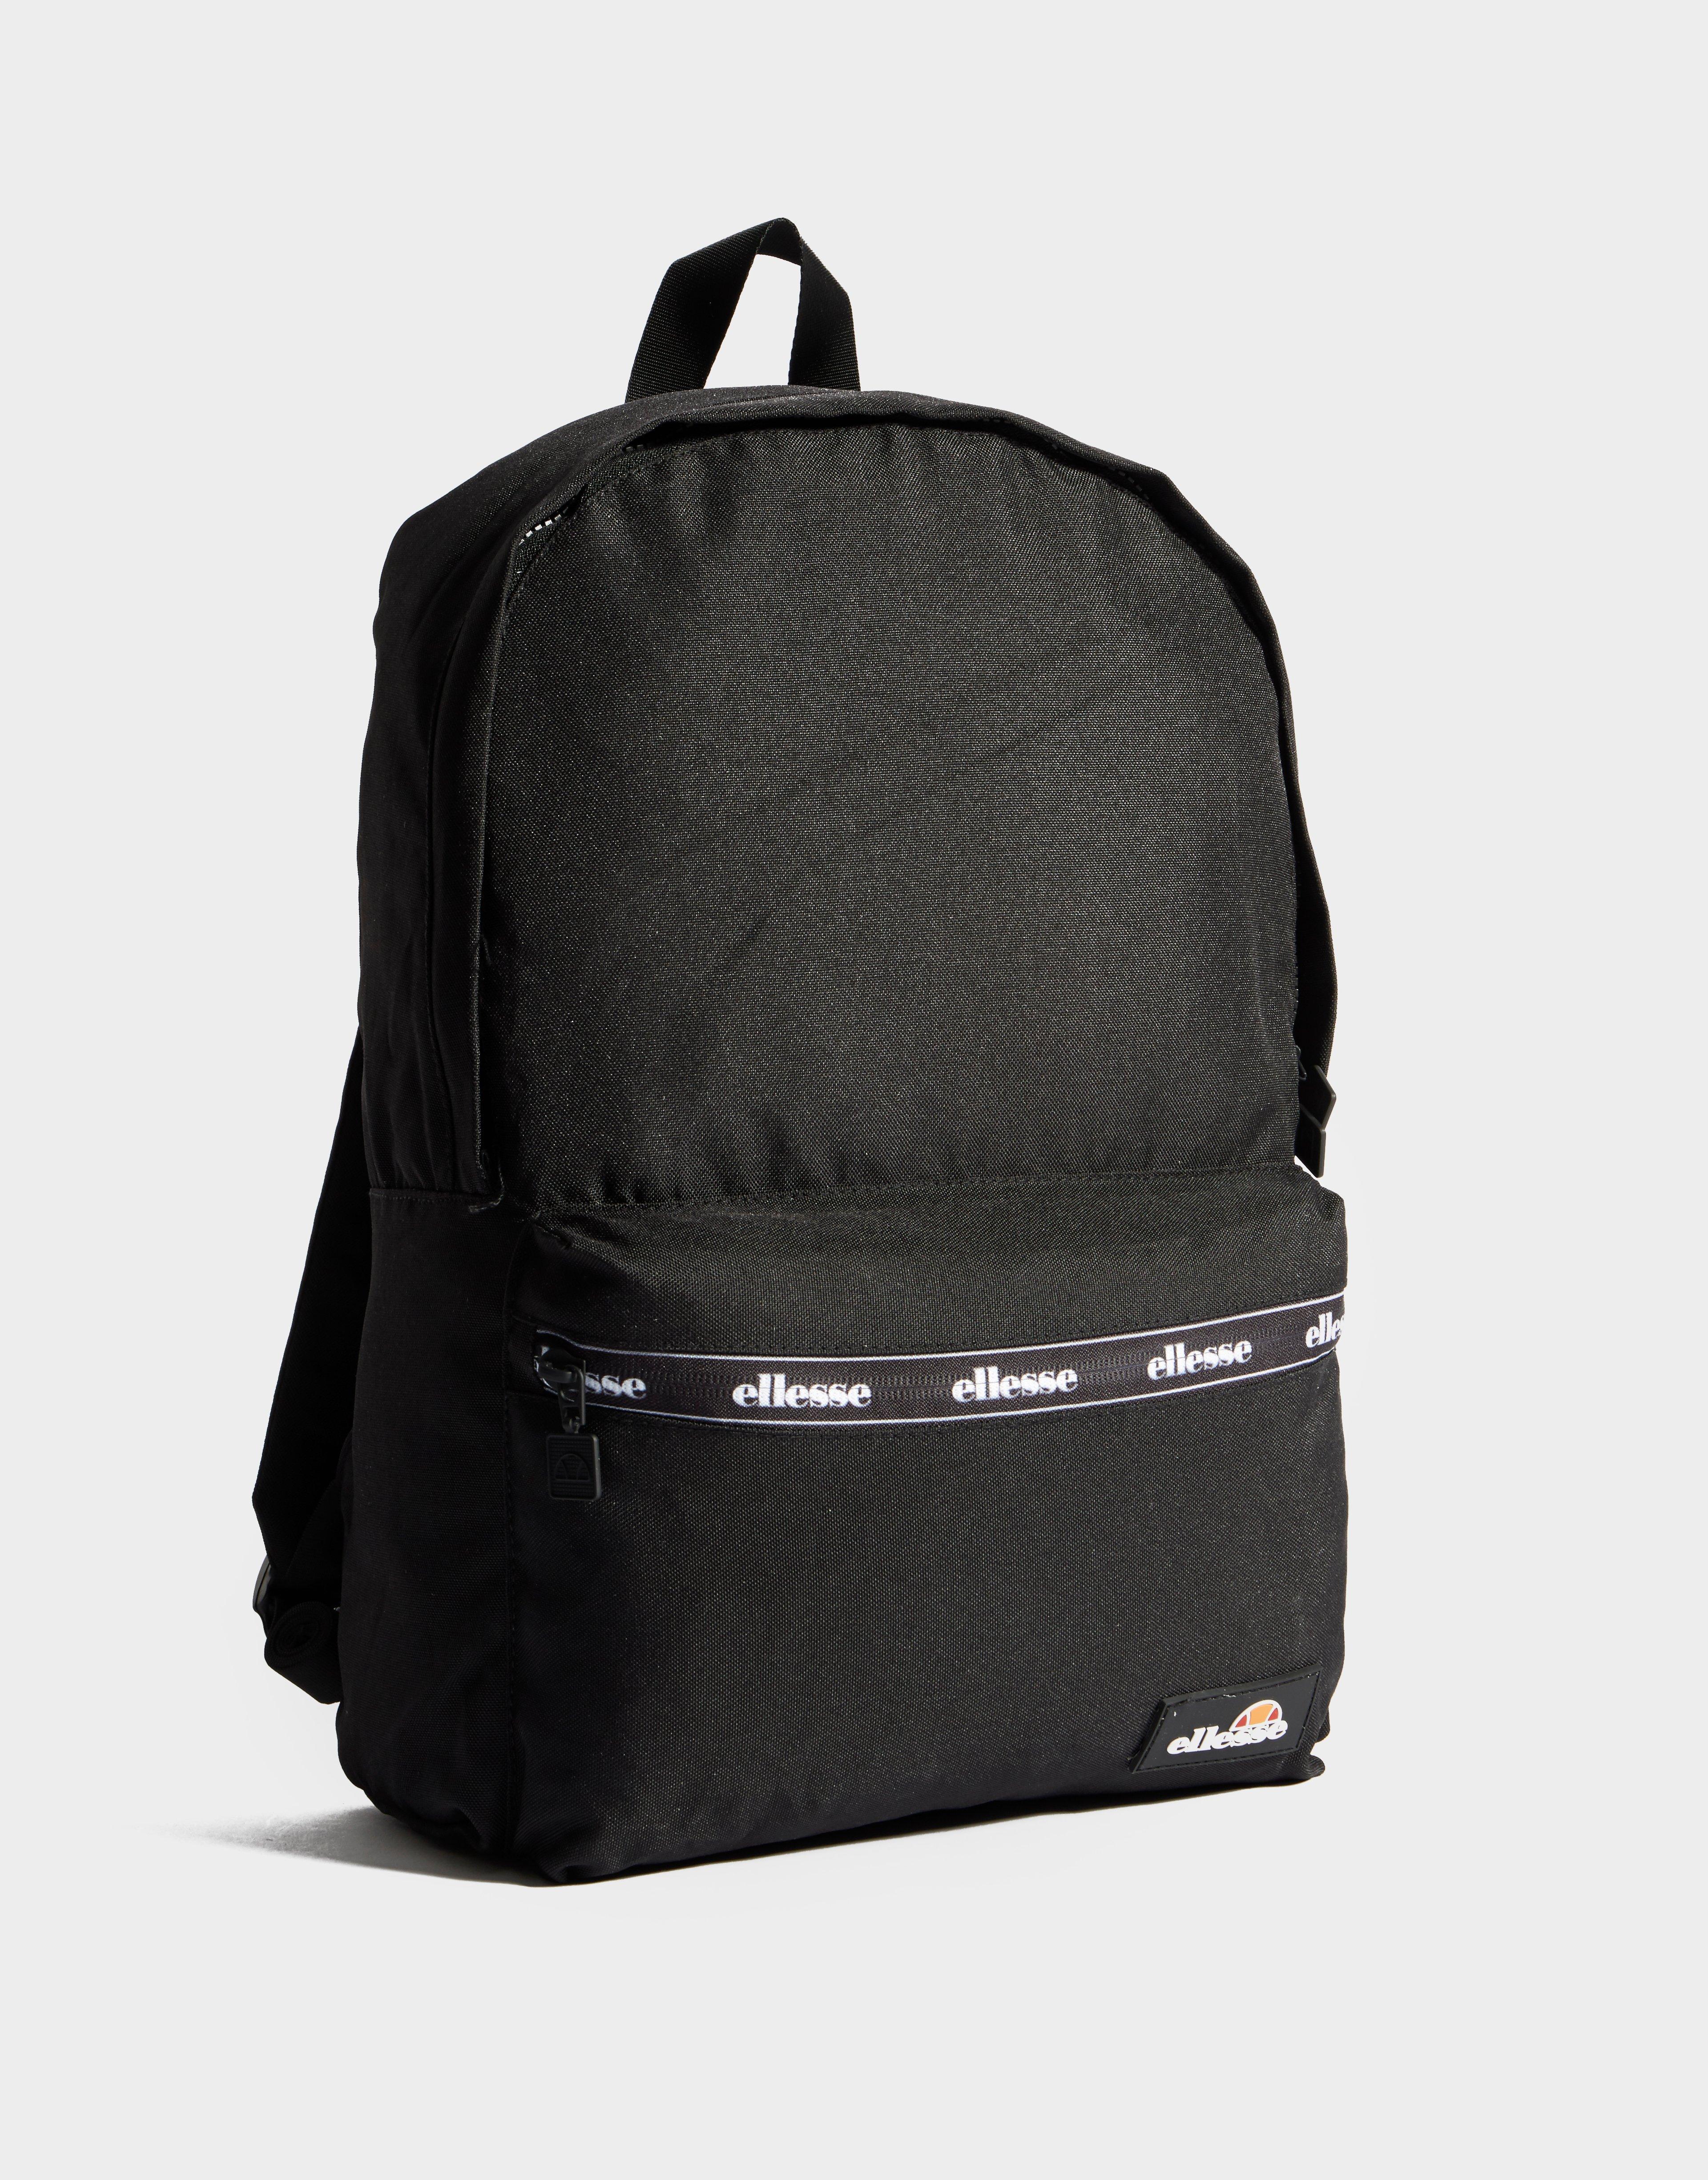 Ellesse Backpack Black Sale Online, 54% OFF | www.andrericard.com